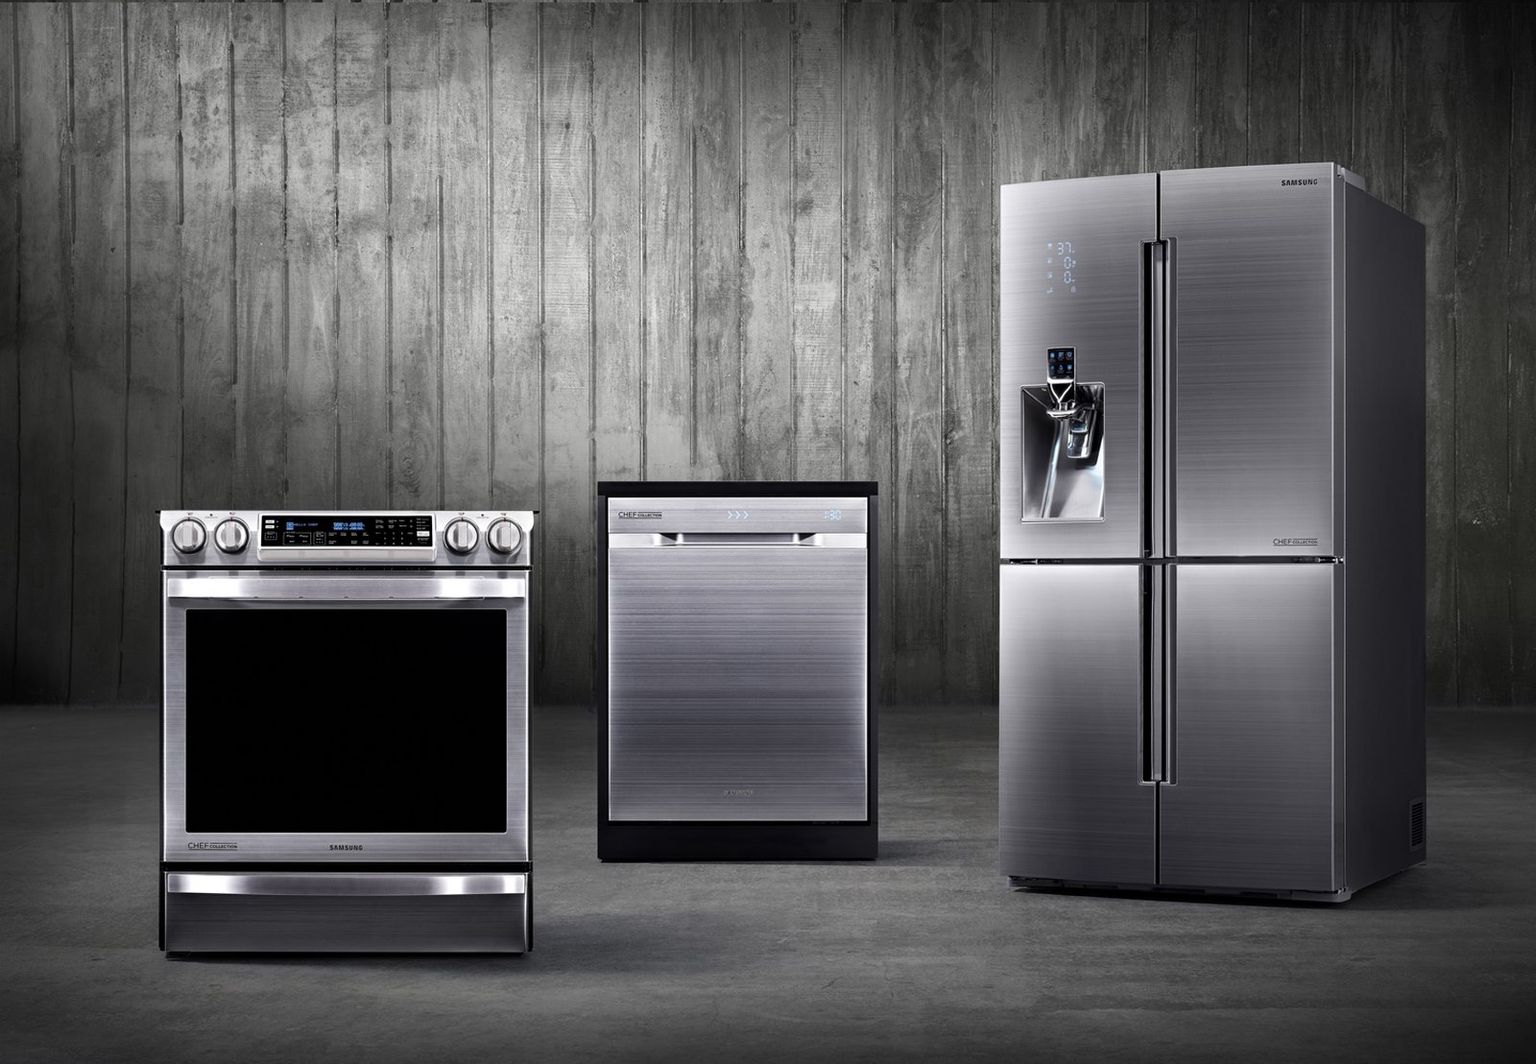 Бытовая техника статьи. Samsung Appliances. Samsung холодильник Chef collection. Кухня с бытовой техникой. Крупная бытовая техник.